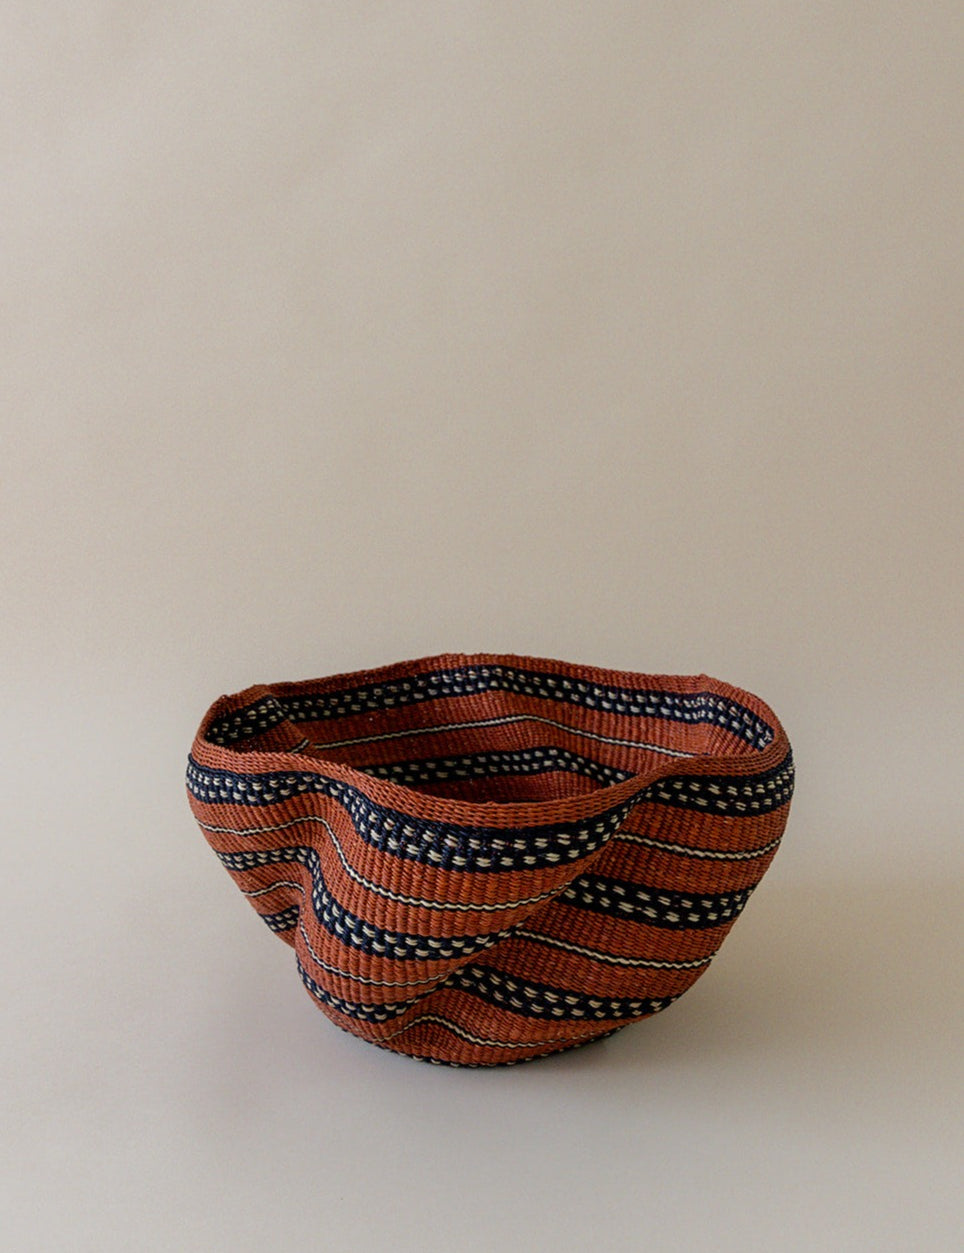 Veta vera grass red burgundy African bowl by Kusuka